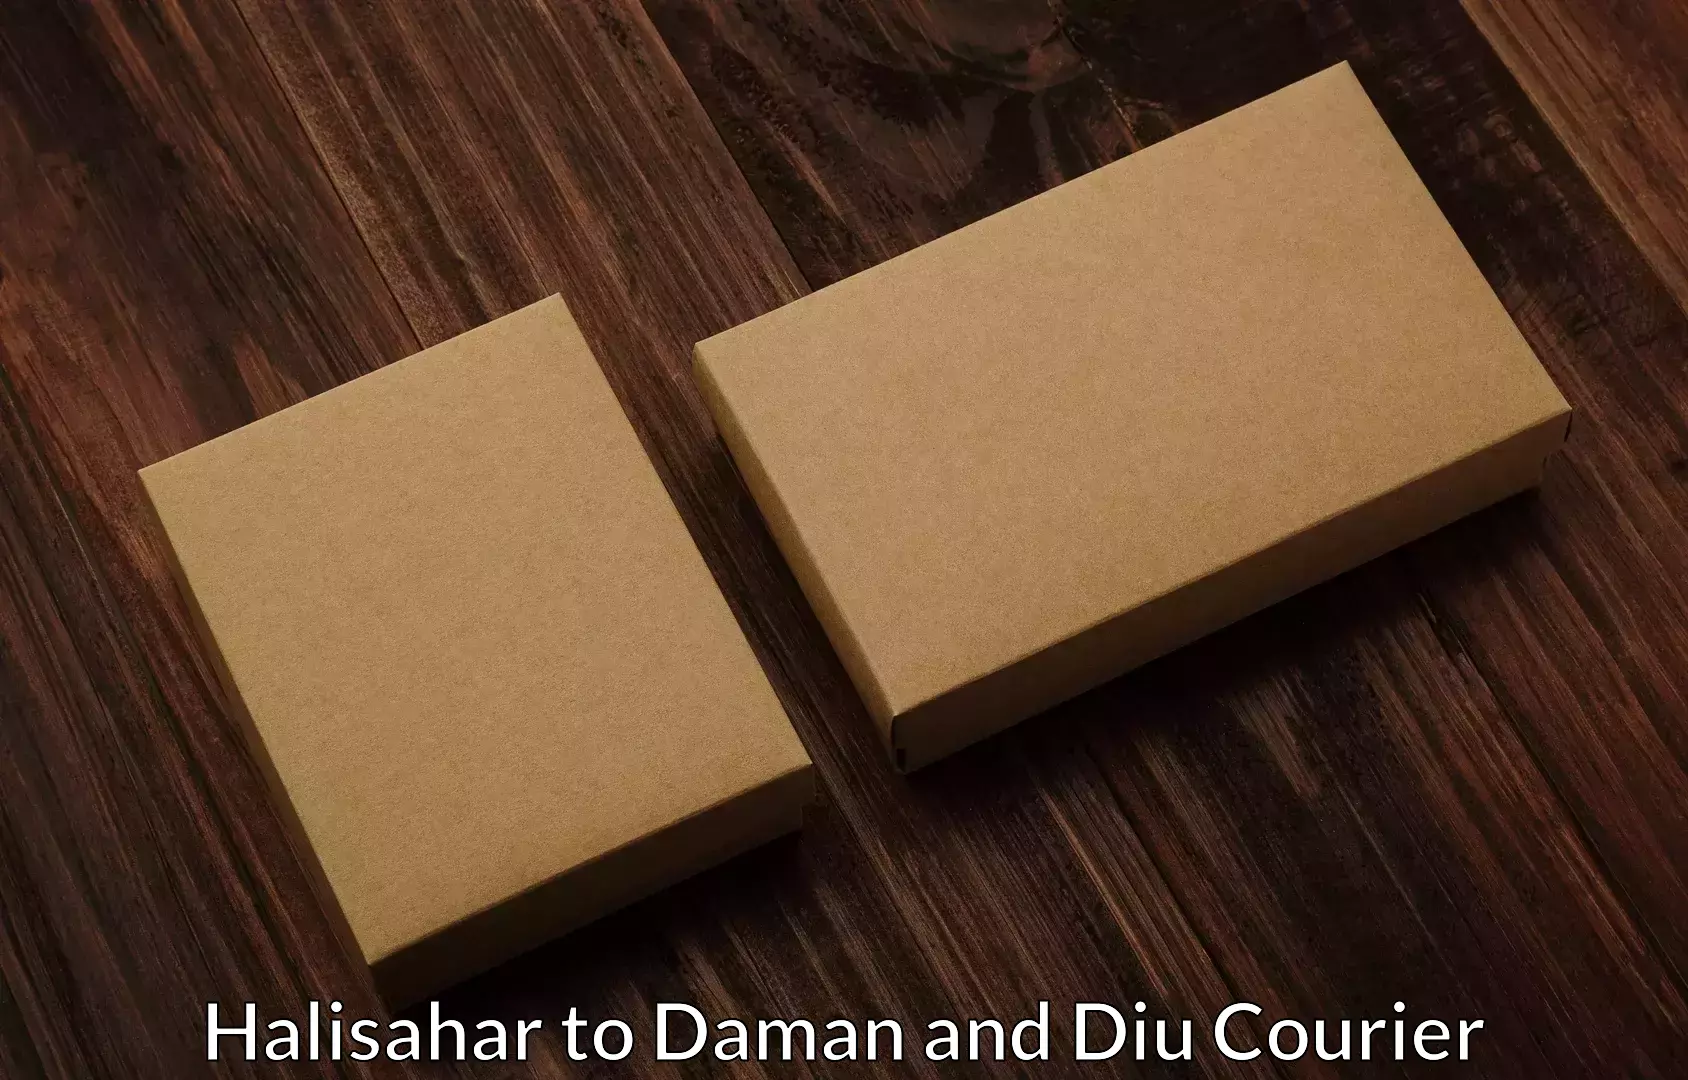 Household transport experts Halisahar to Daman and Diu